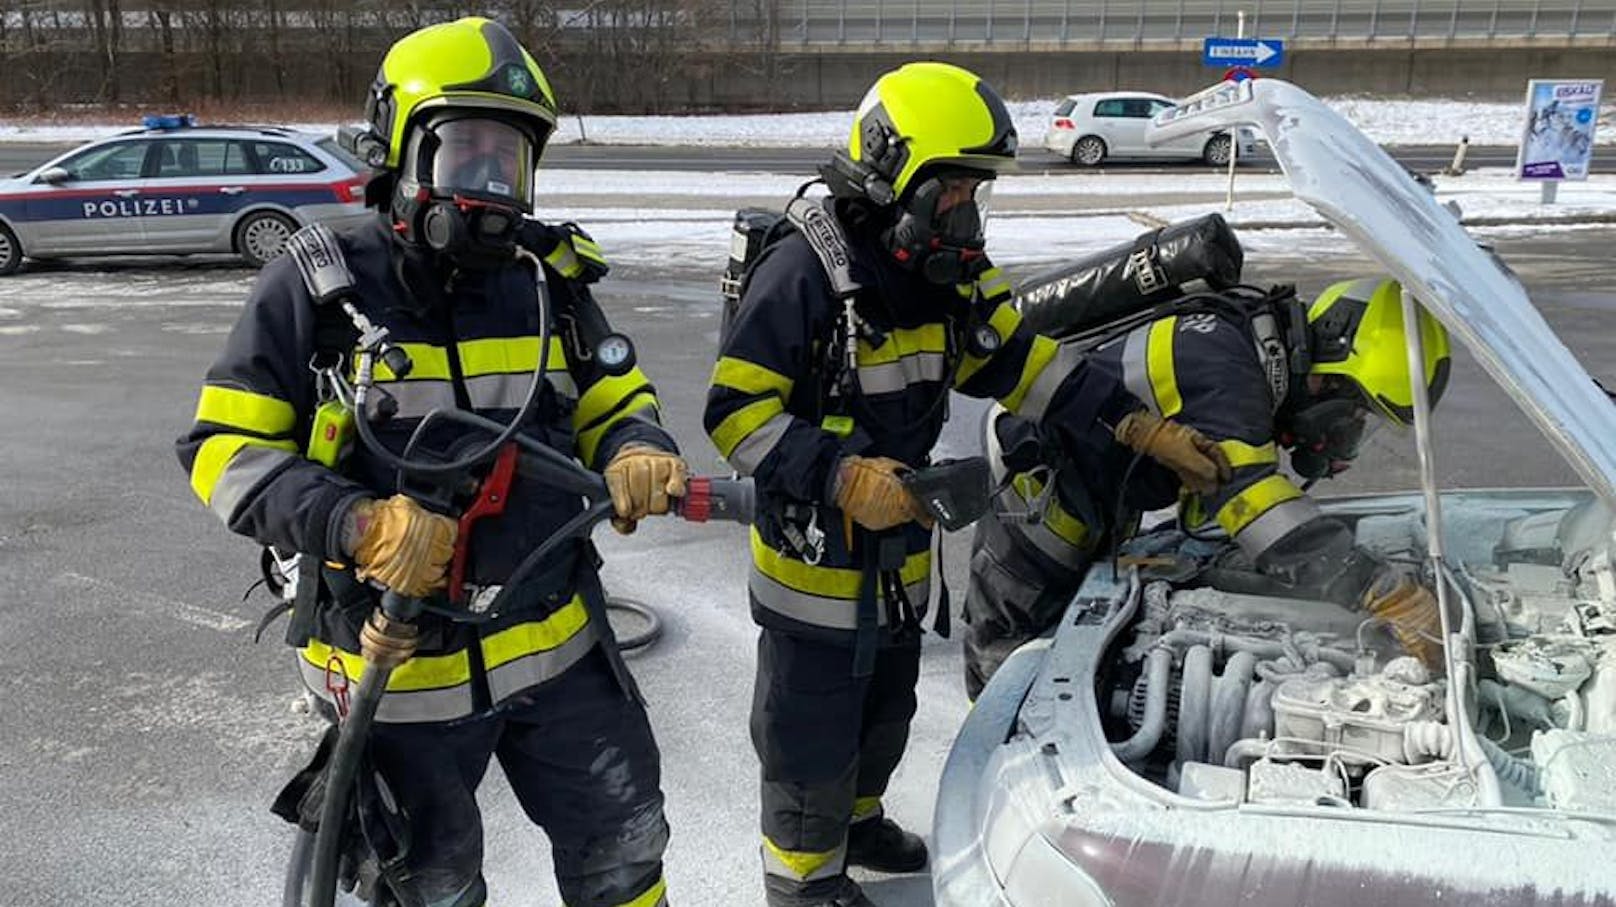 Der Brand konnte durch die Einsatzkräfte der Freiwilligen Feuerwehr Peggau schnell gelöscht werden. 12. Jänner 2021